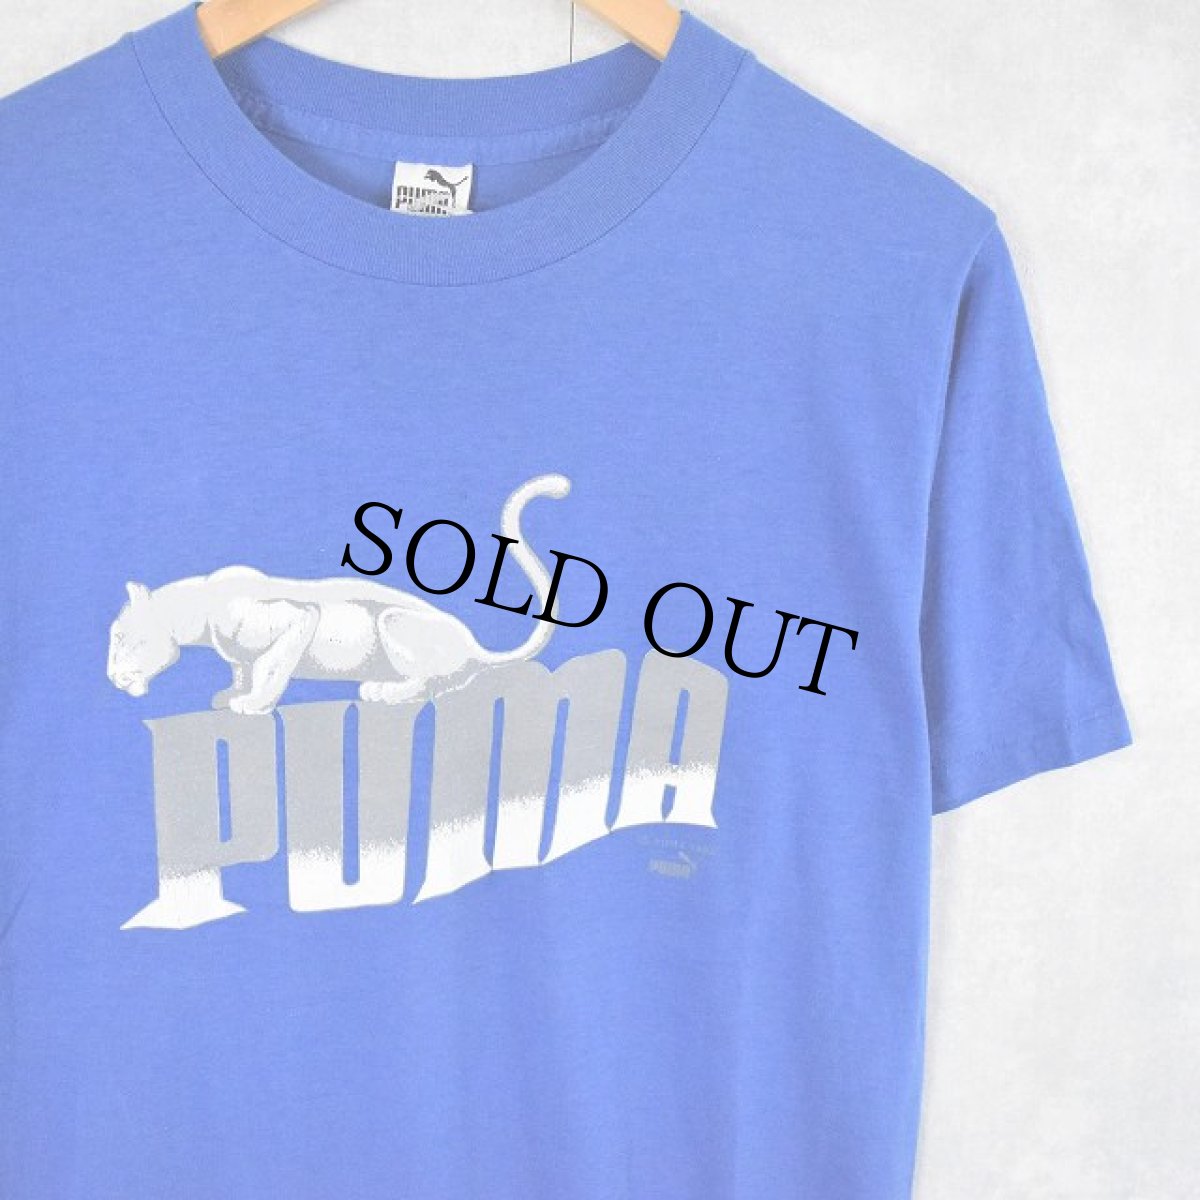 画像1: 80's PUMA USA製 ロゴプリントTシャツ L (1)